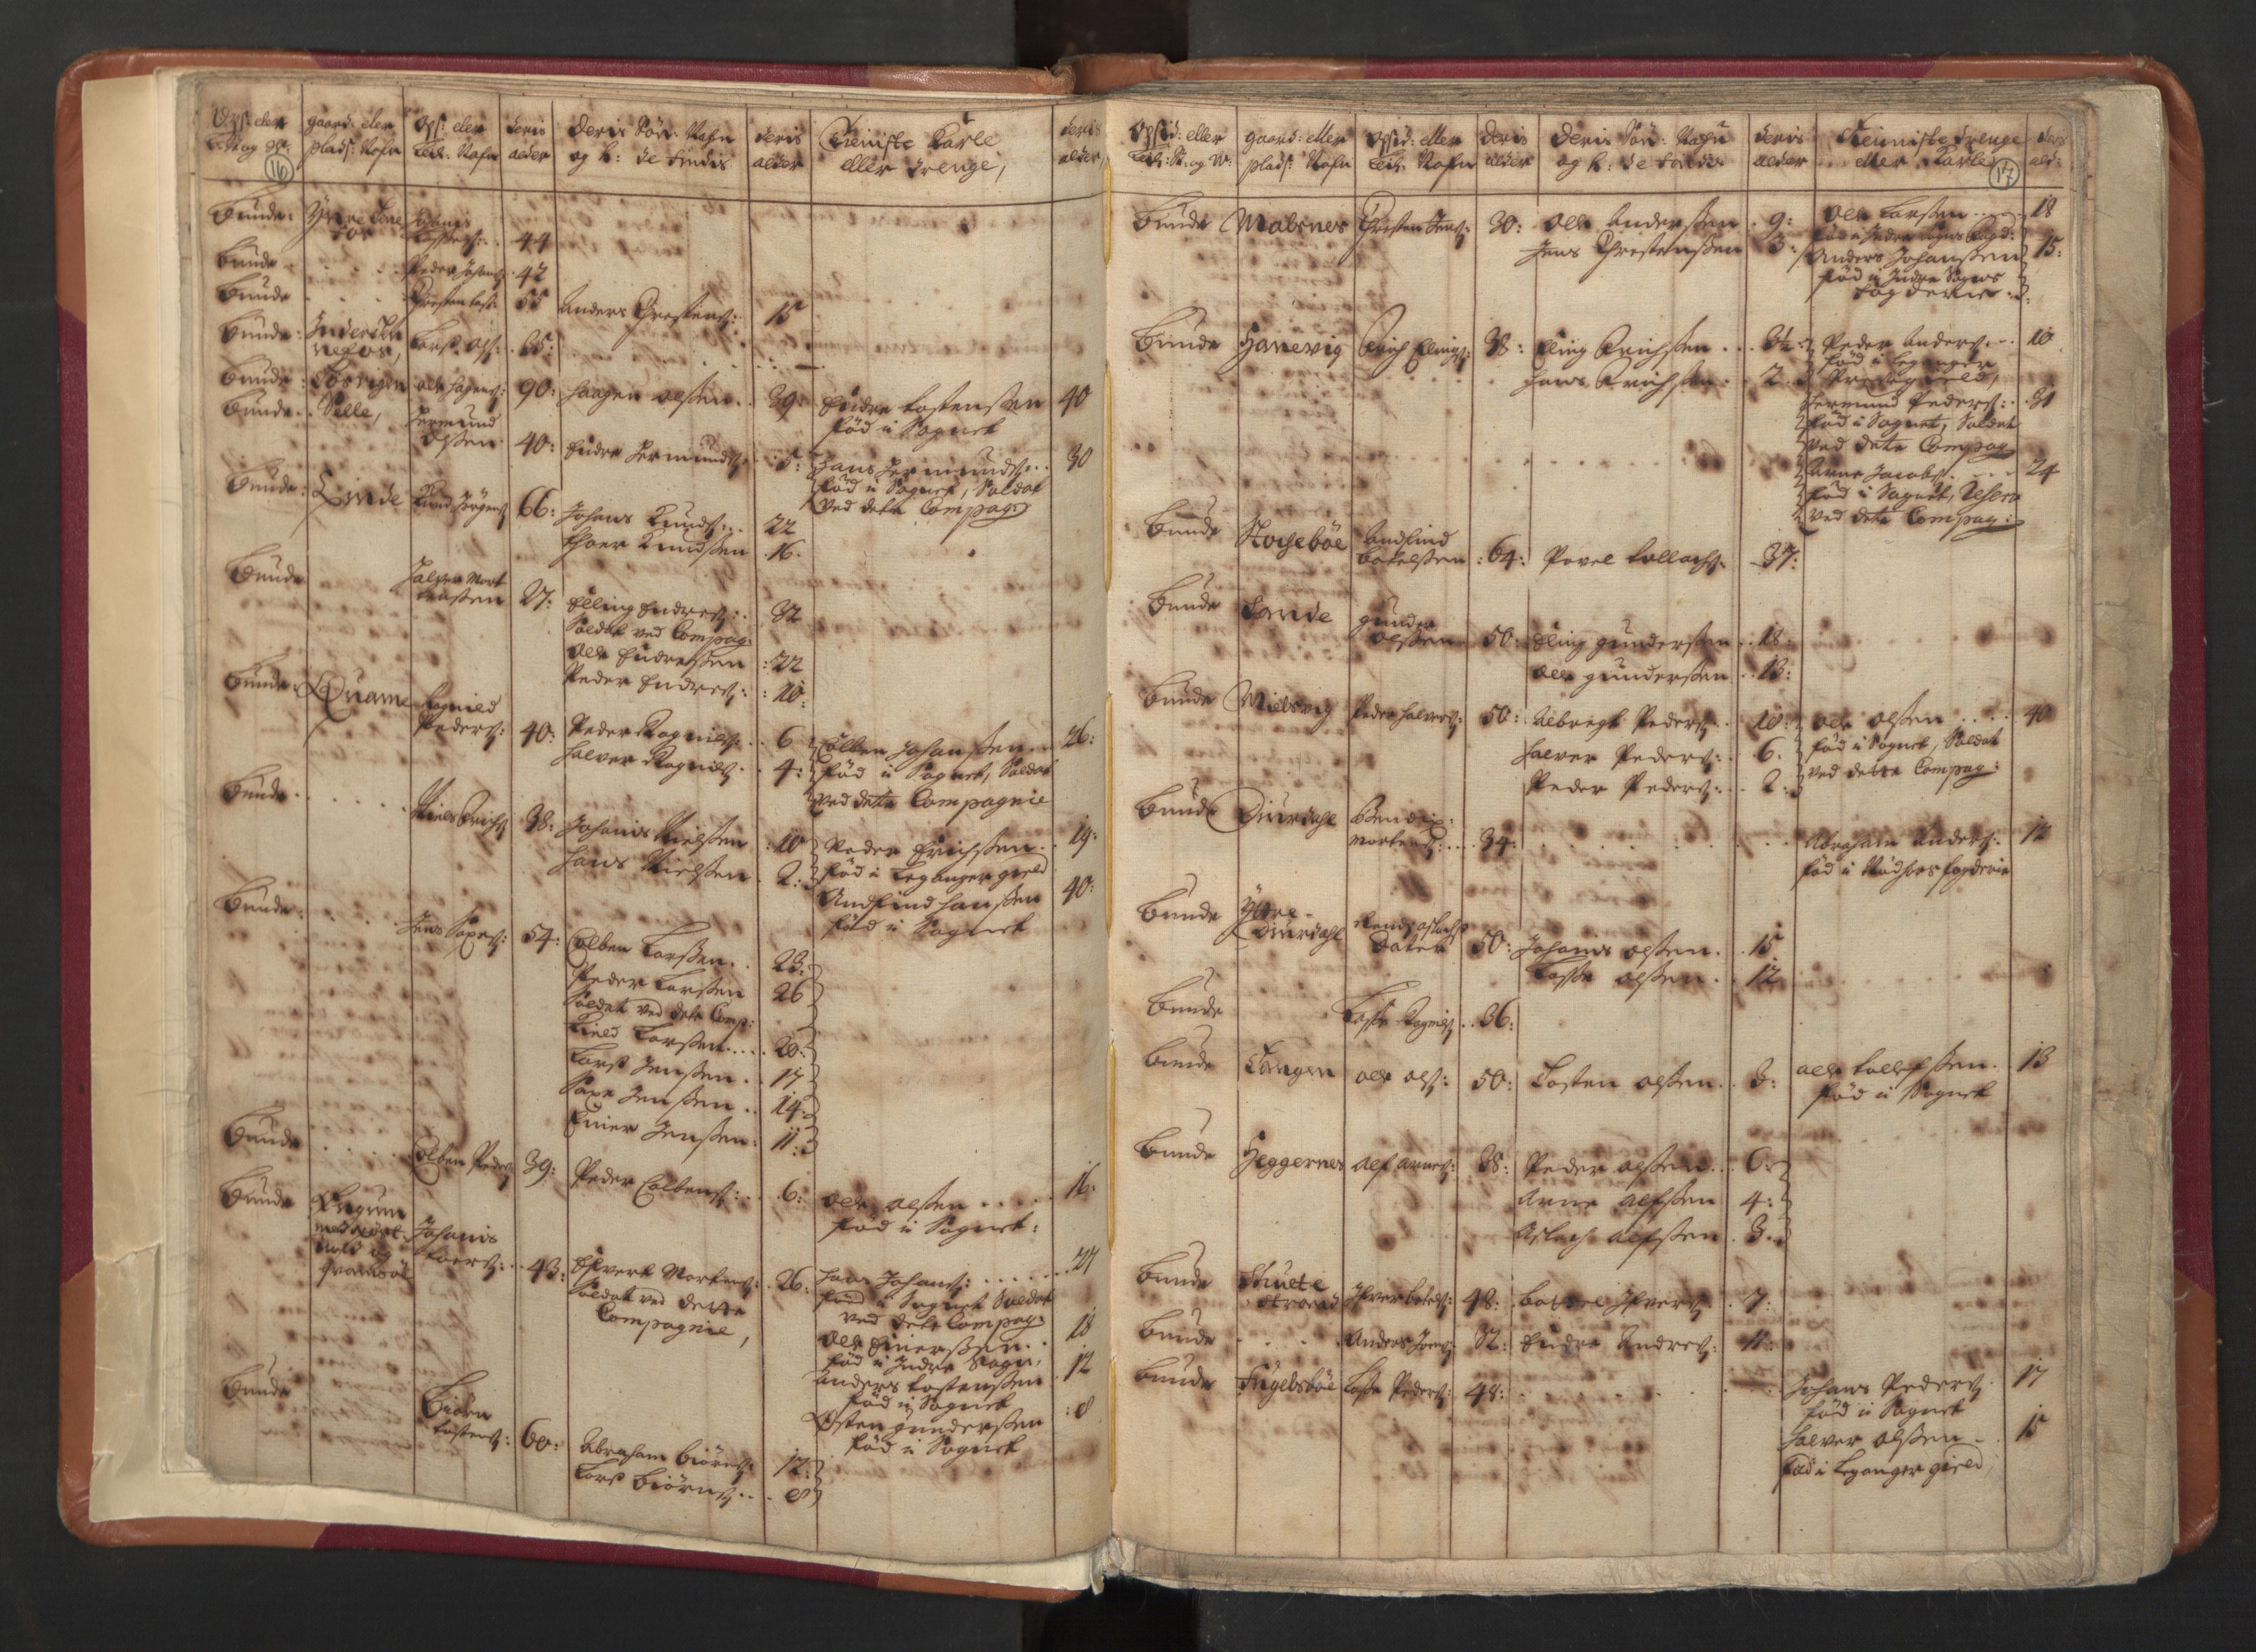 RA, Manntallet 1701, nr. 8: Ytre Sogn fogderi og Indre Sogn fogderi, 1701, s. 16-17